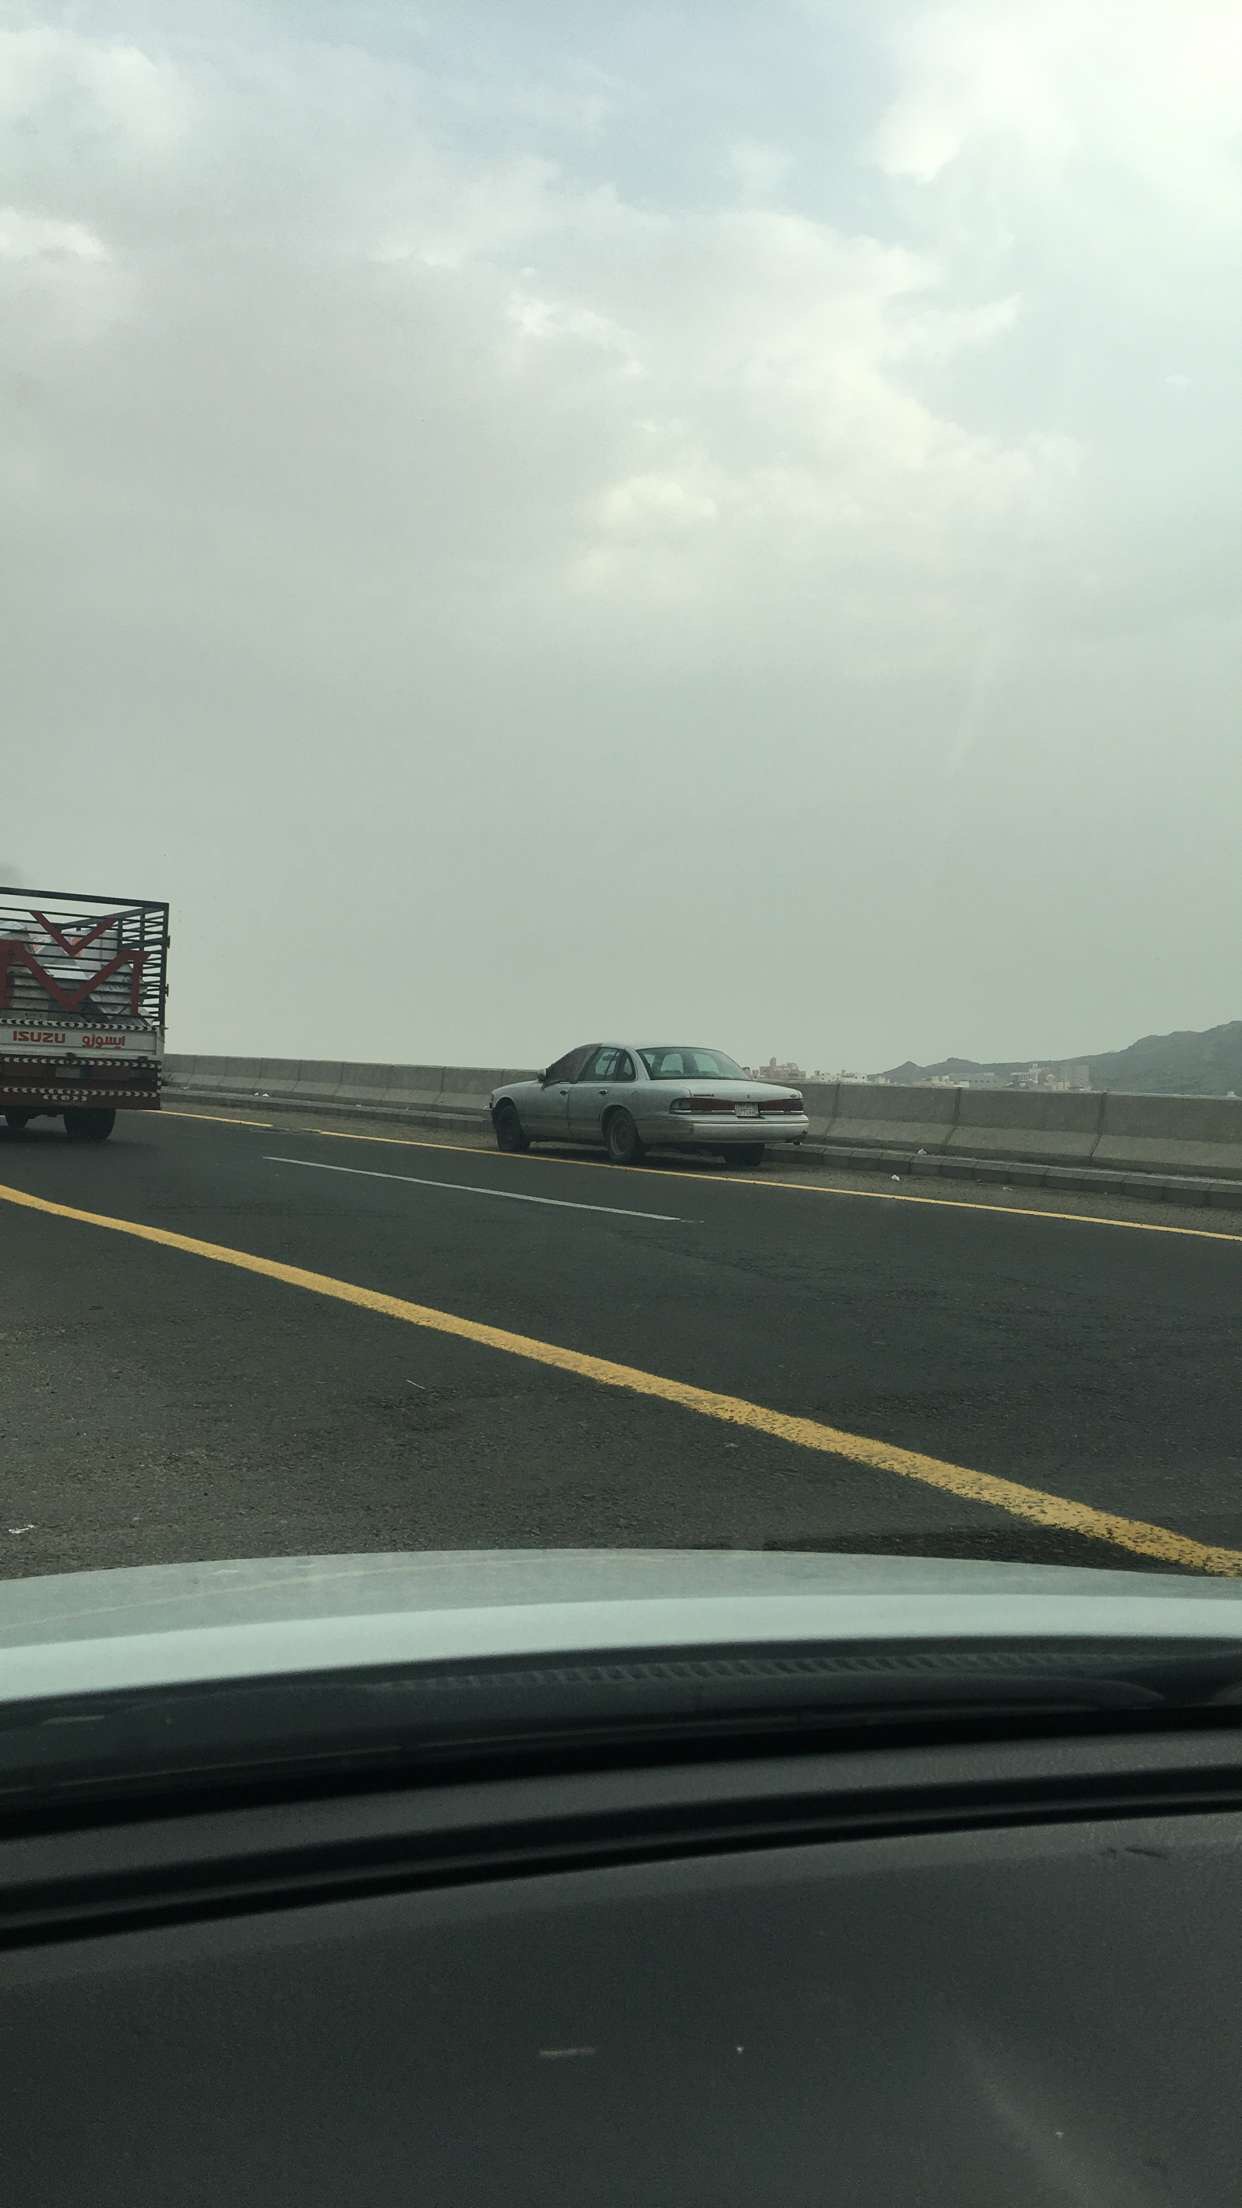 بالصور.. “المواطن” ترصد وقوف سيارة بشكل خاطئ على طريق سريع بمكة